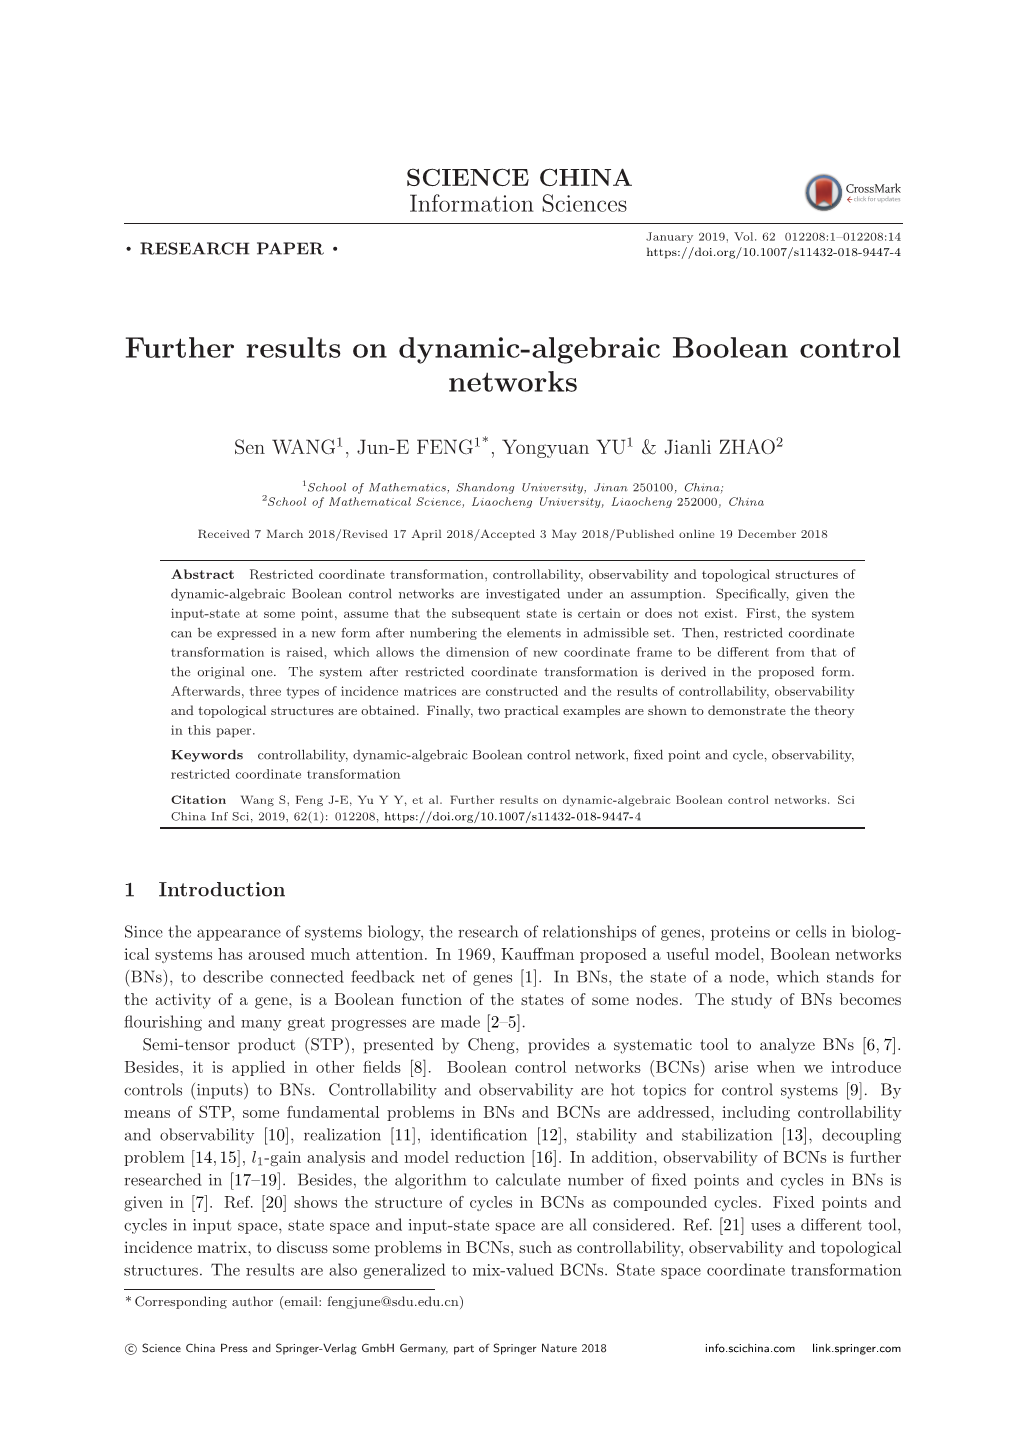 Further Results on Dynamic-Algebraic Boolean Control Networks